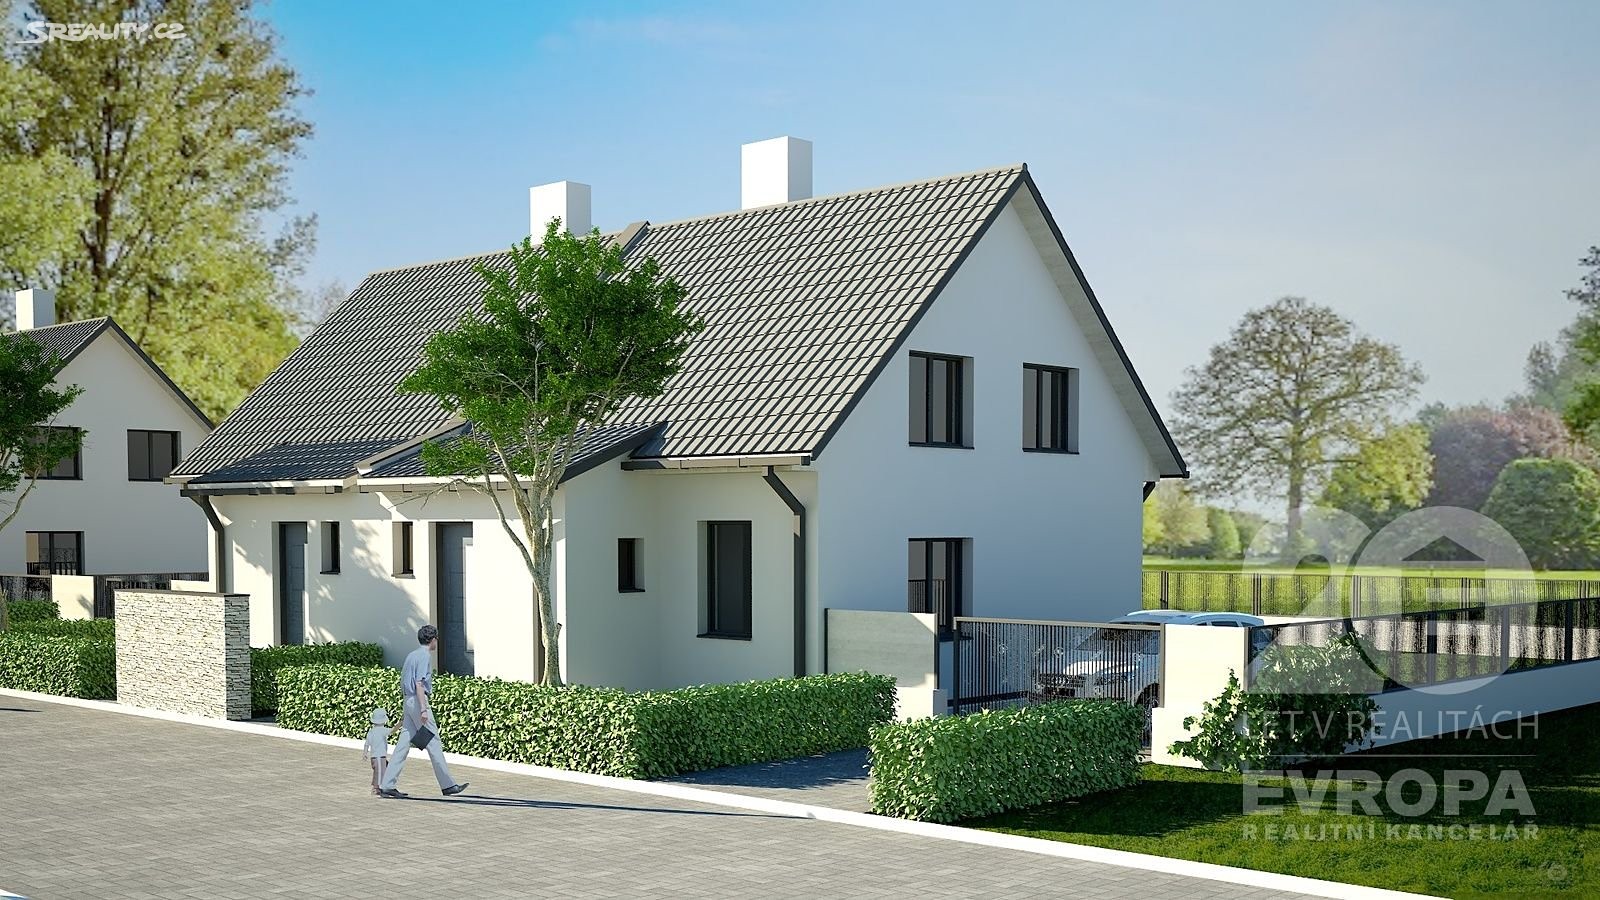 Prodej  rodinného domu 124 m², pozemek 376 m², Větrná, Olomouc - Nedvězí